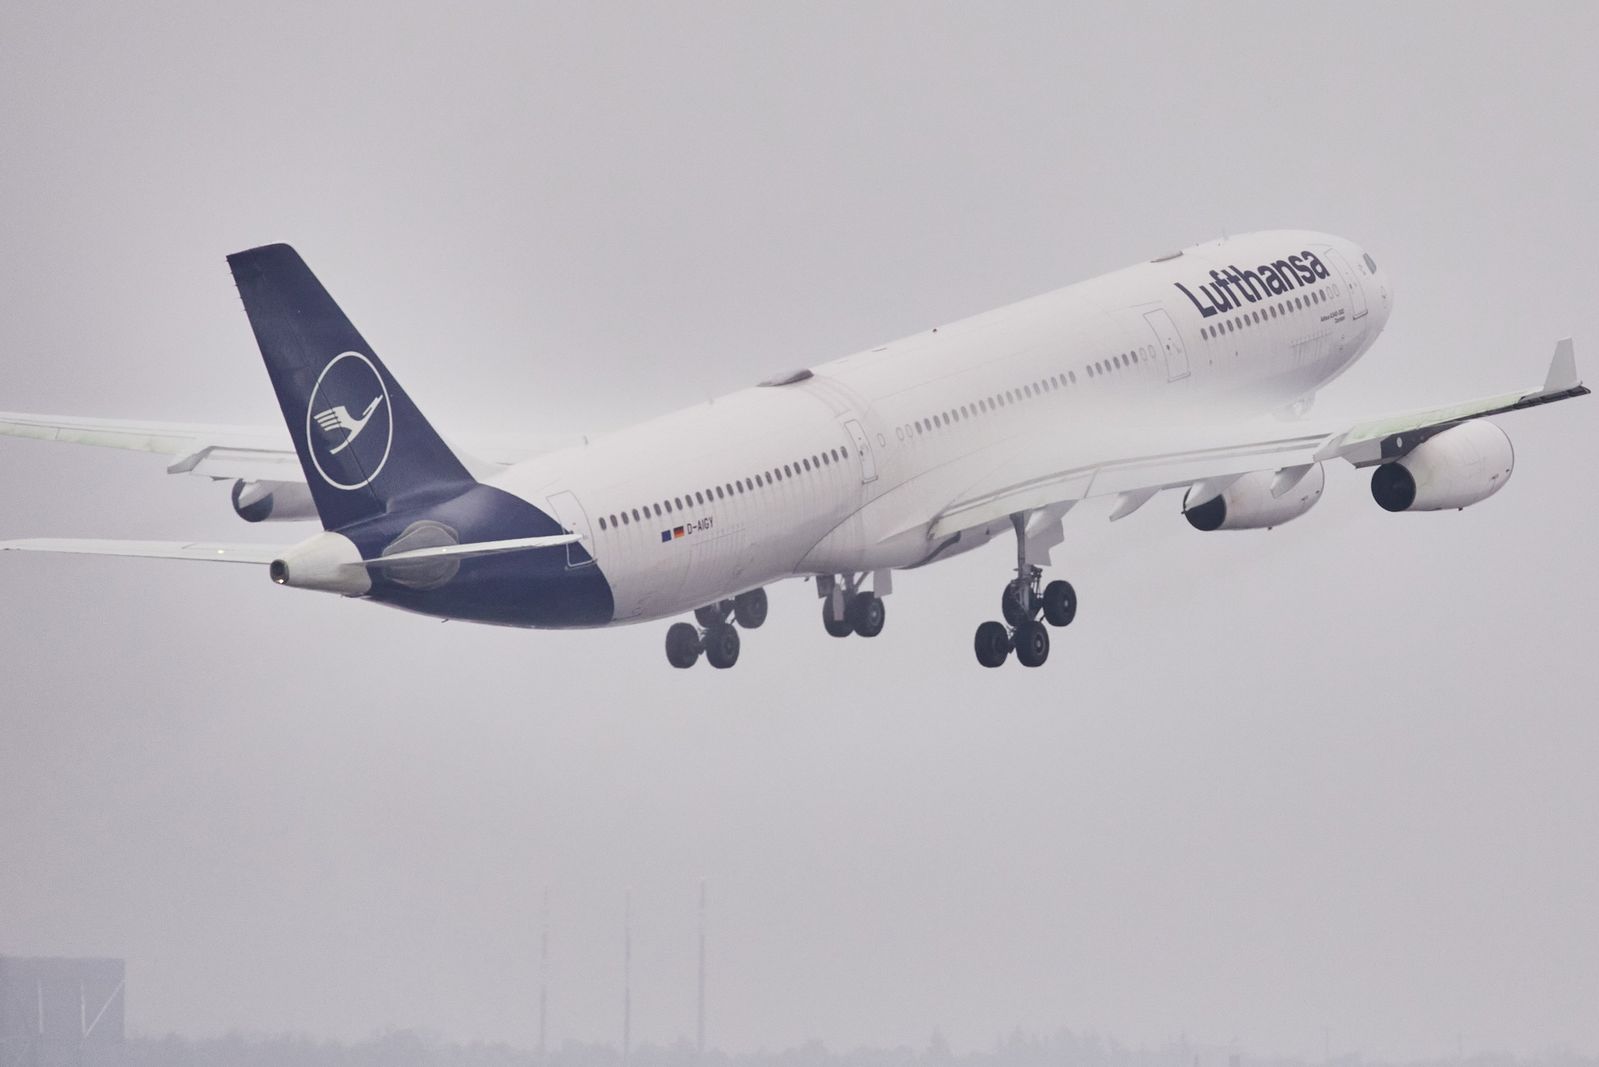 Triebwerksausfall bei Lufthansa über Grönland